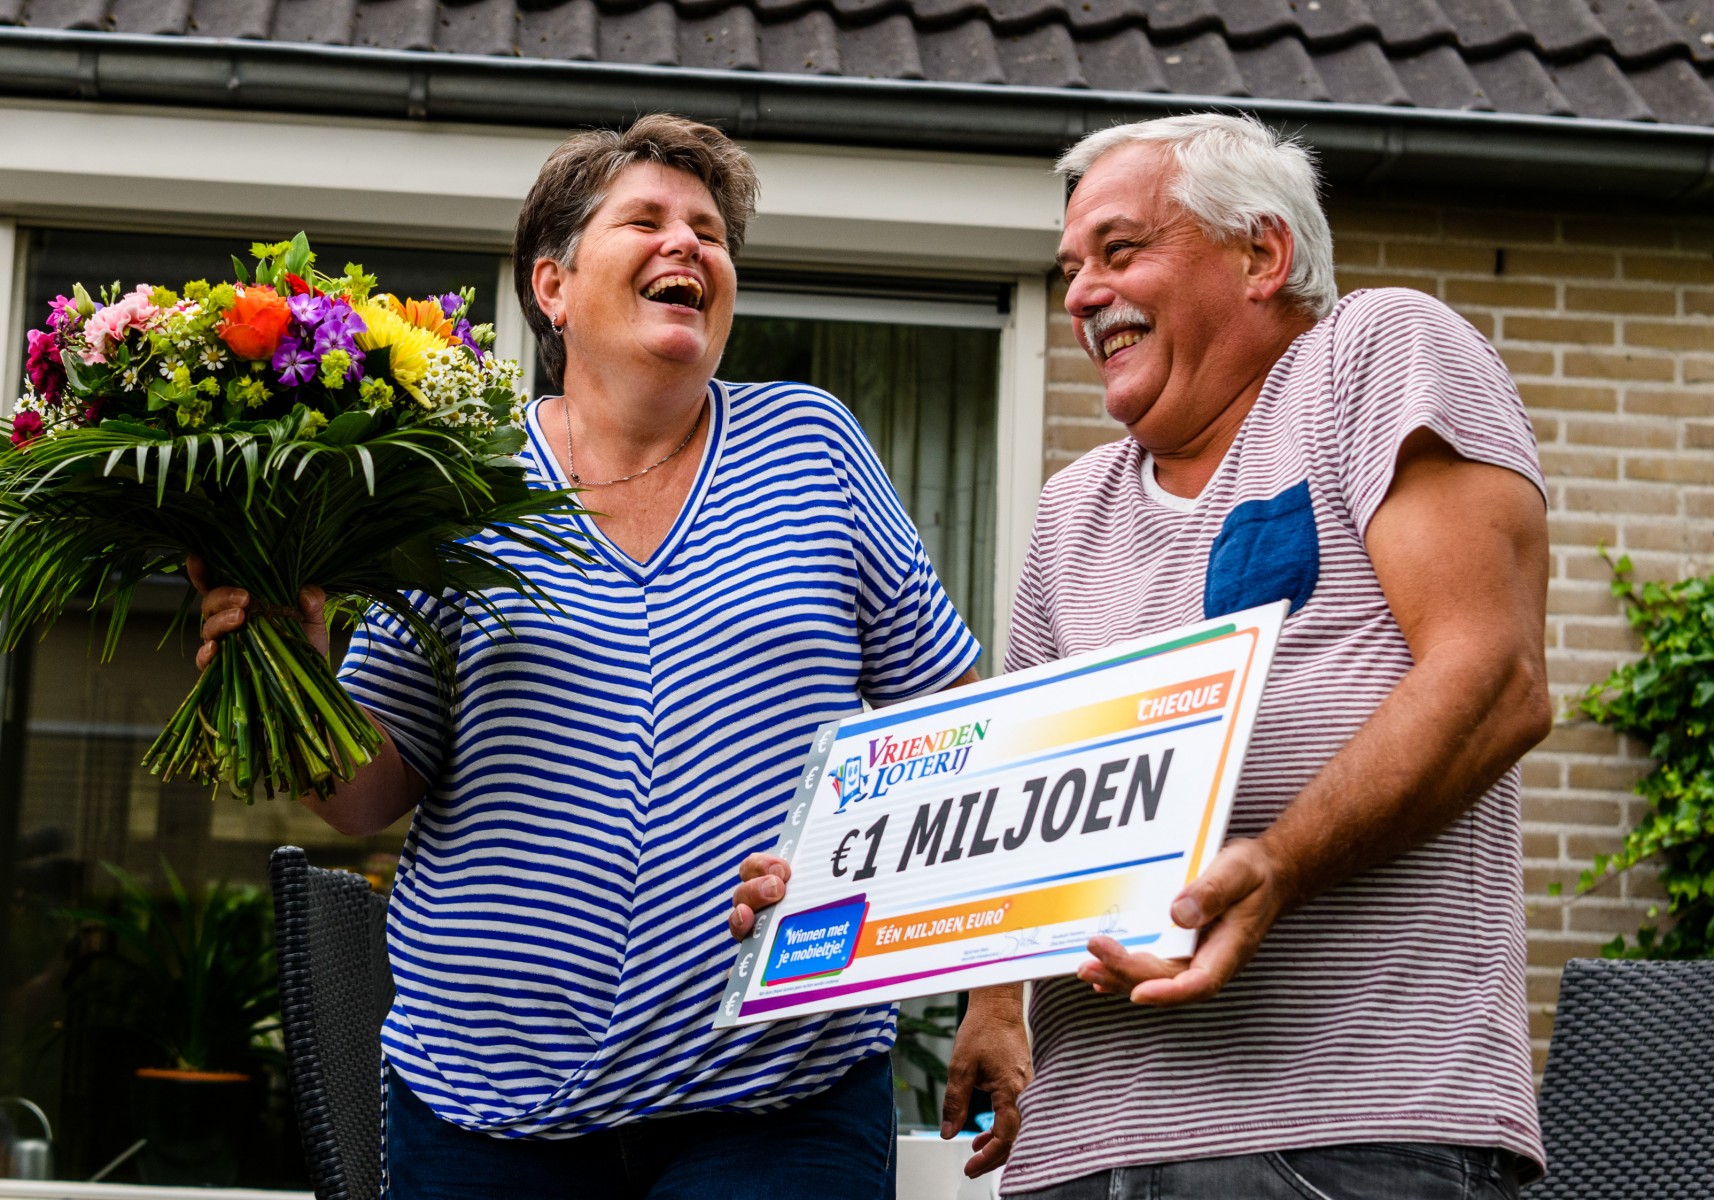 Gerrit en Marjan uit Vaassen op familiebezoek in Australië dankzij 1 miljoen euro van VriendenLoterij